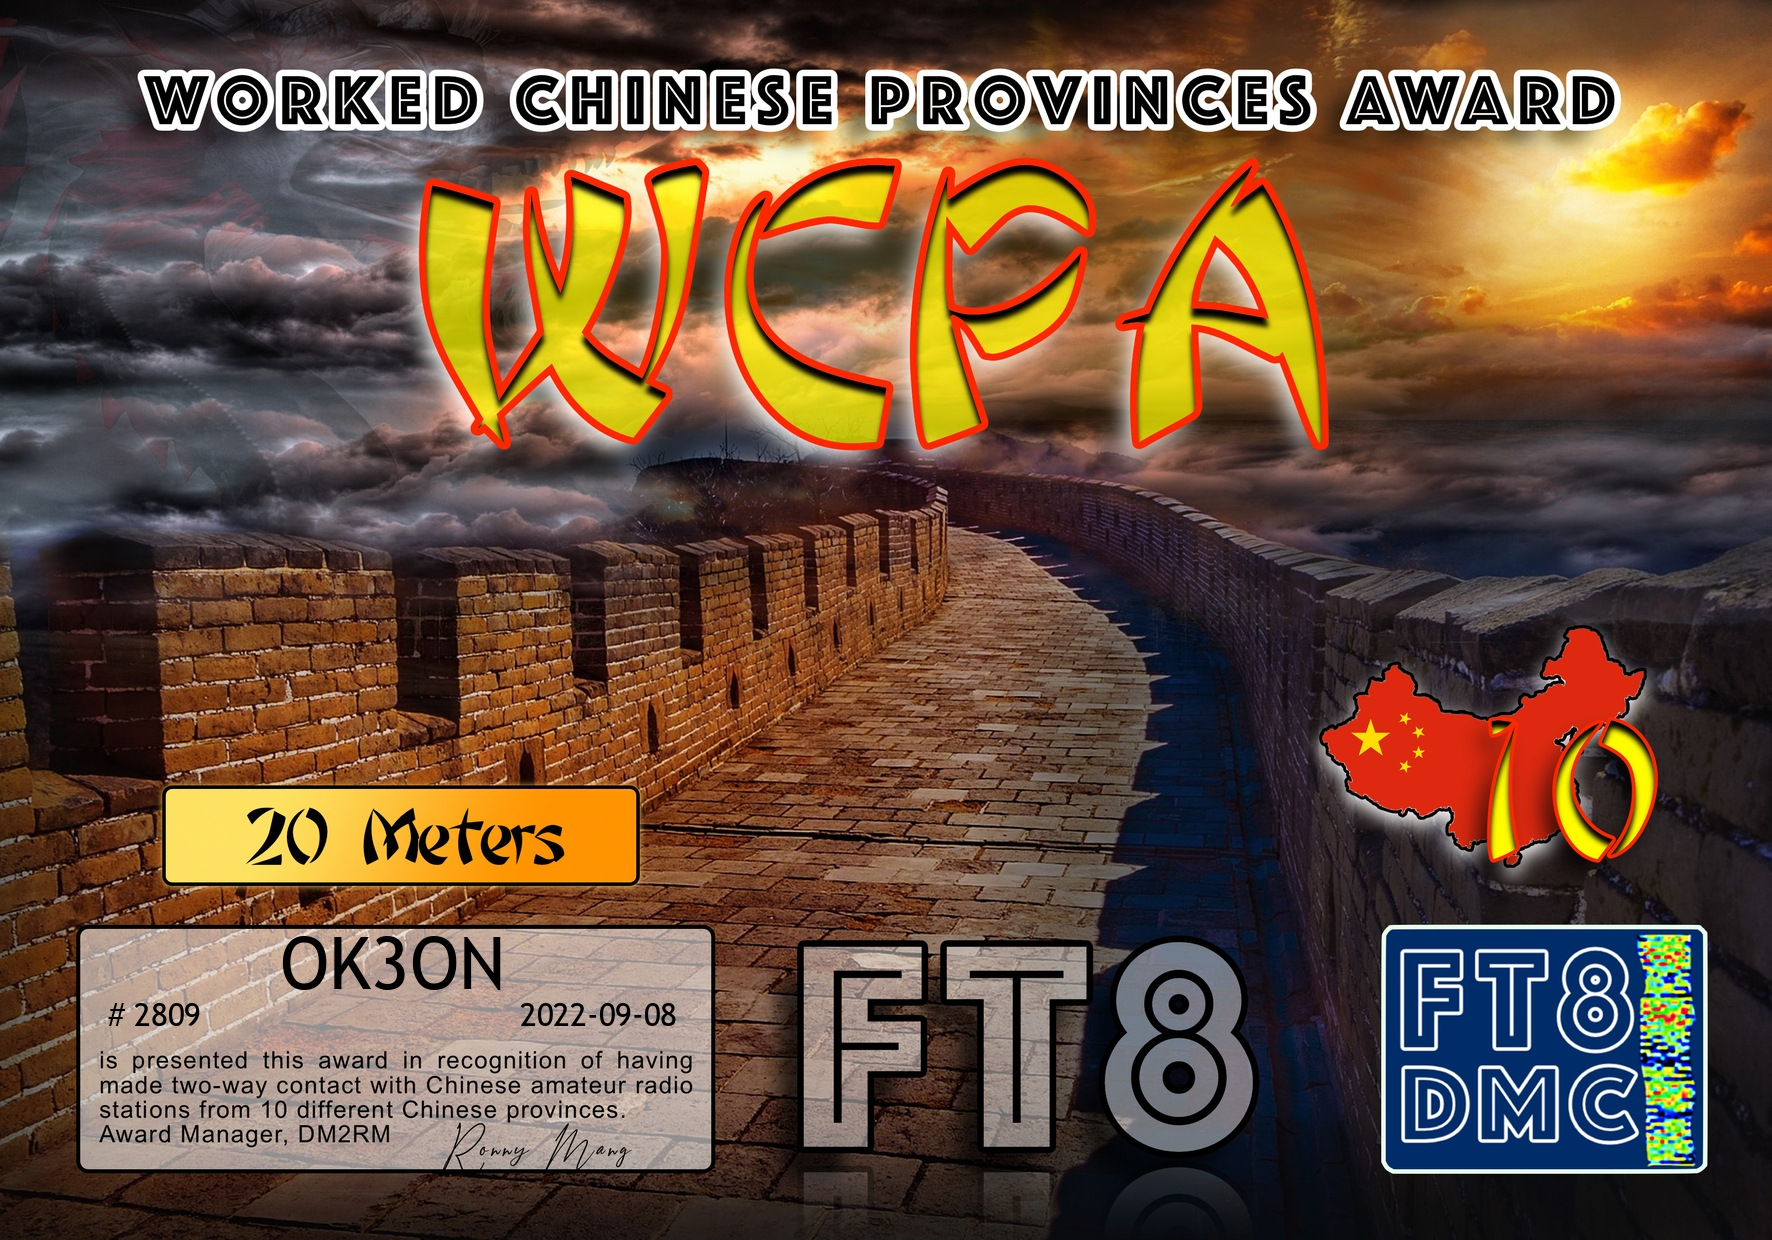 awards/OK3ON-WCPA20-10_FT8DMC.jpg